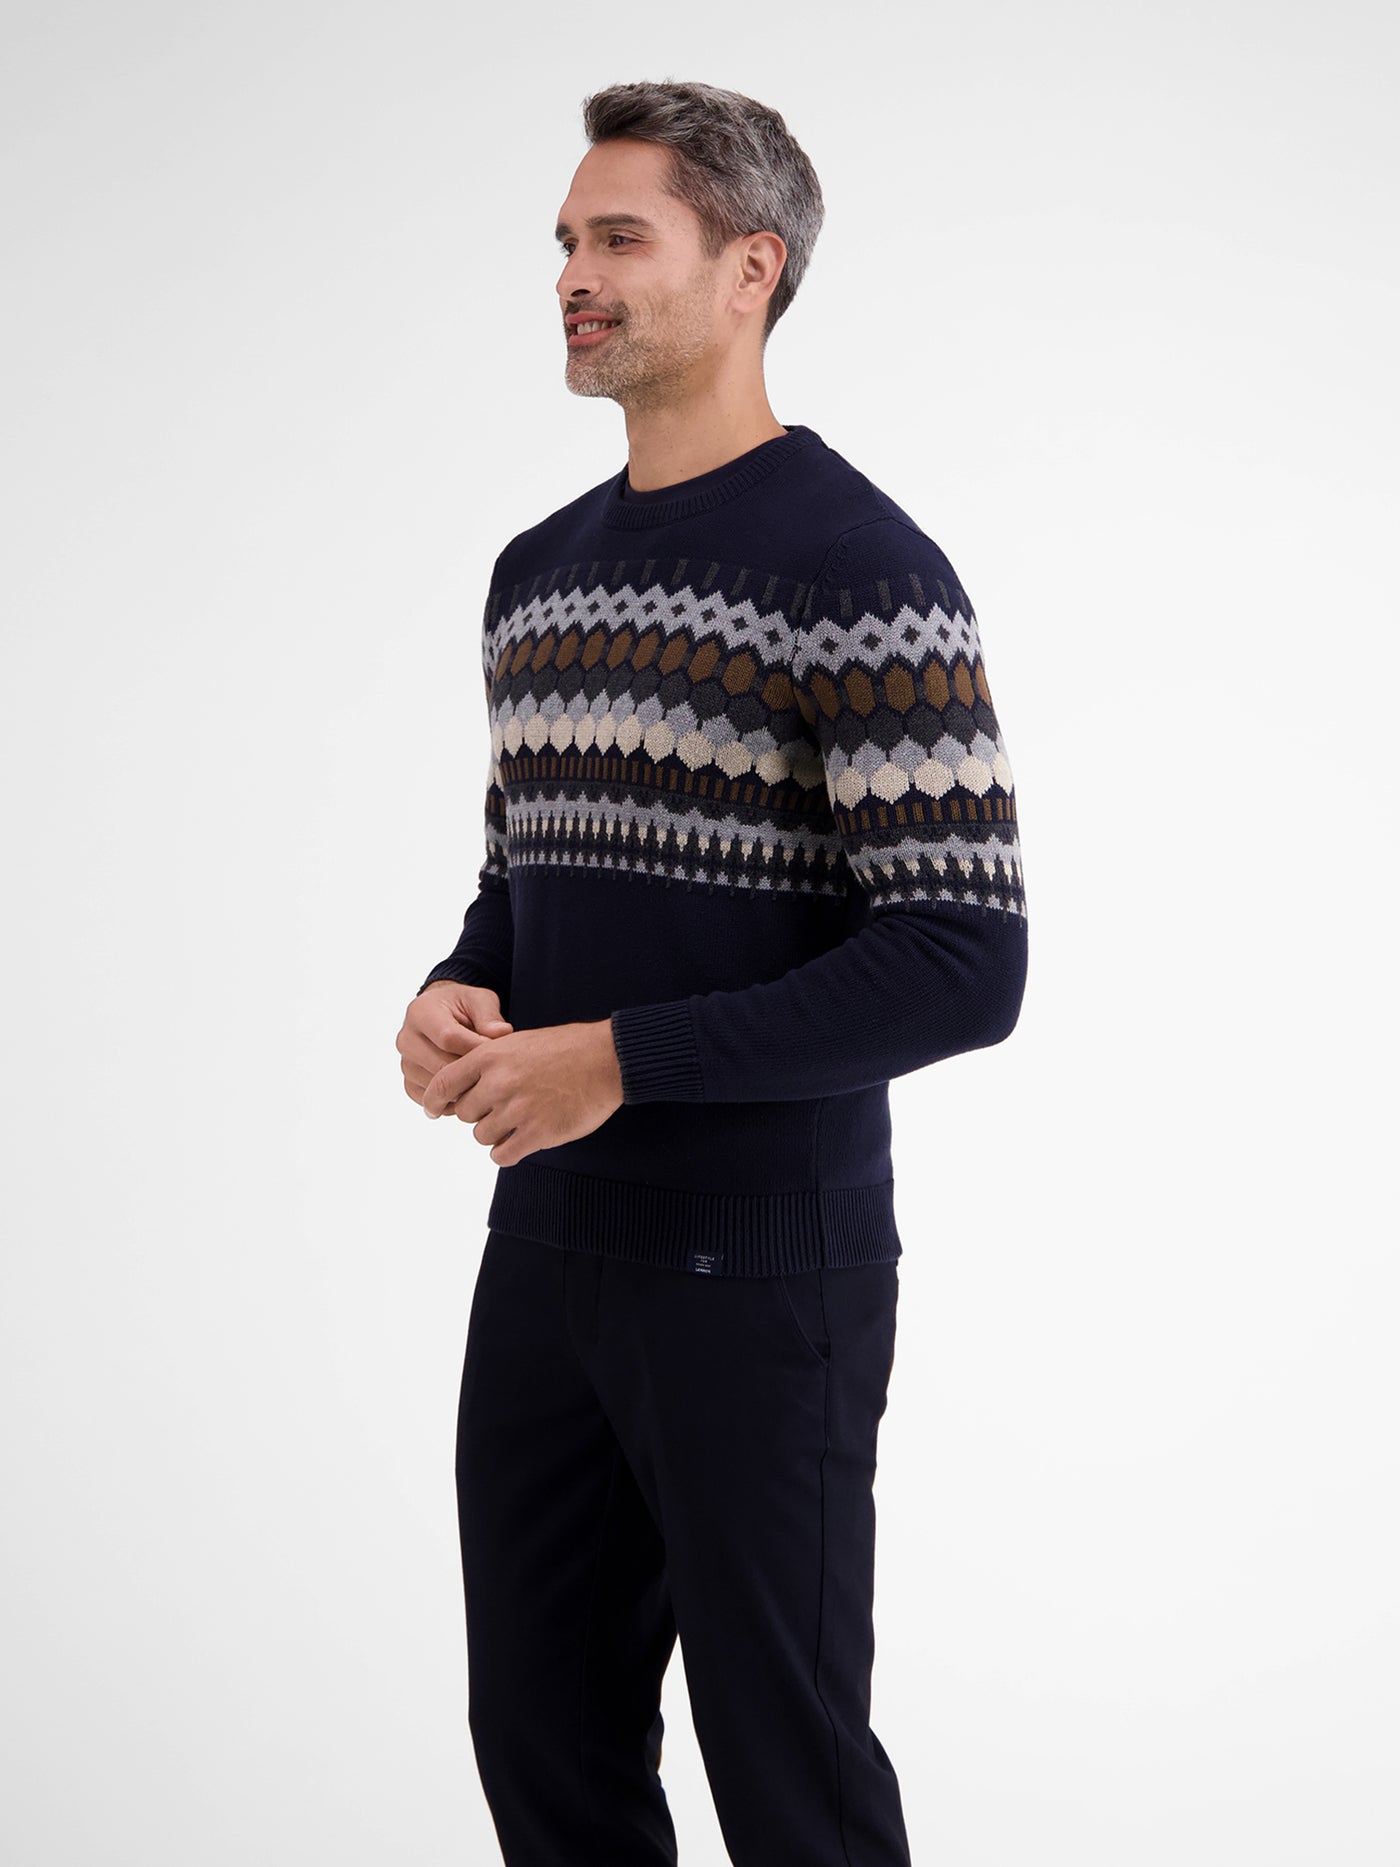 Jacquard knit jumper